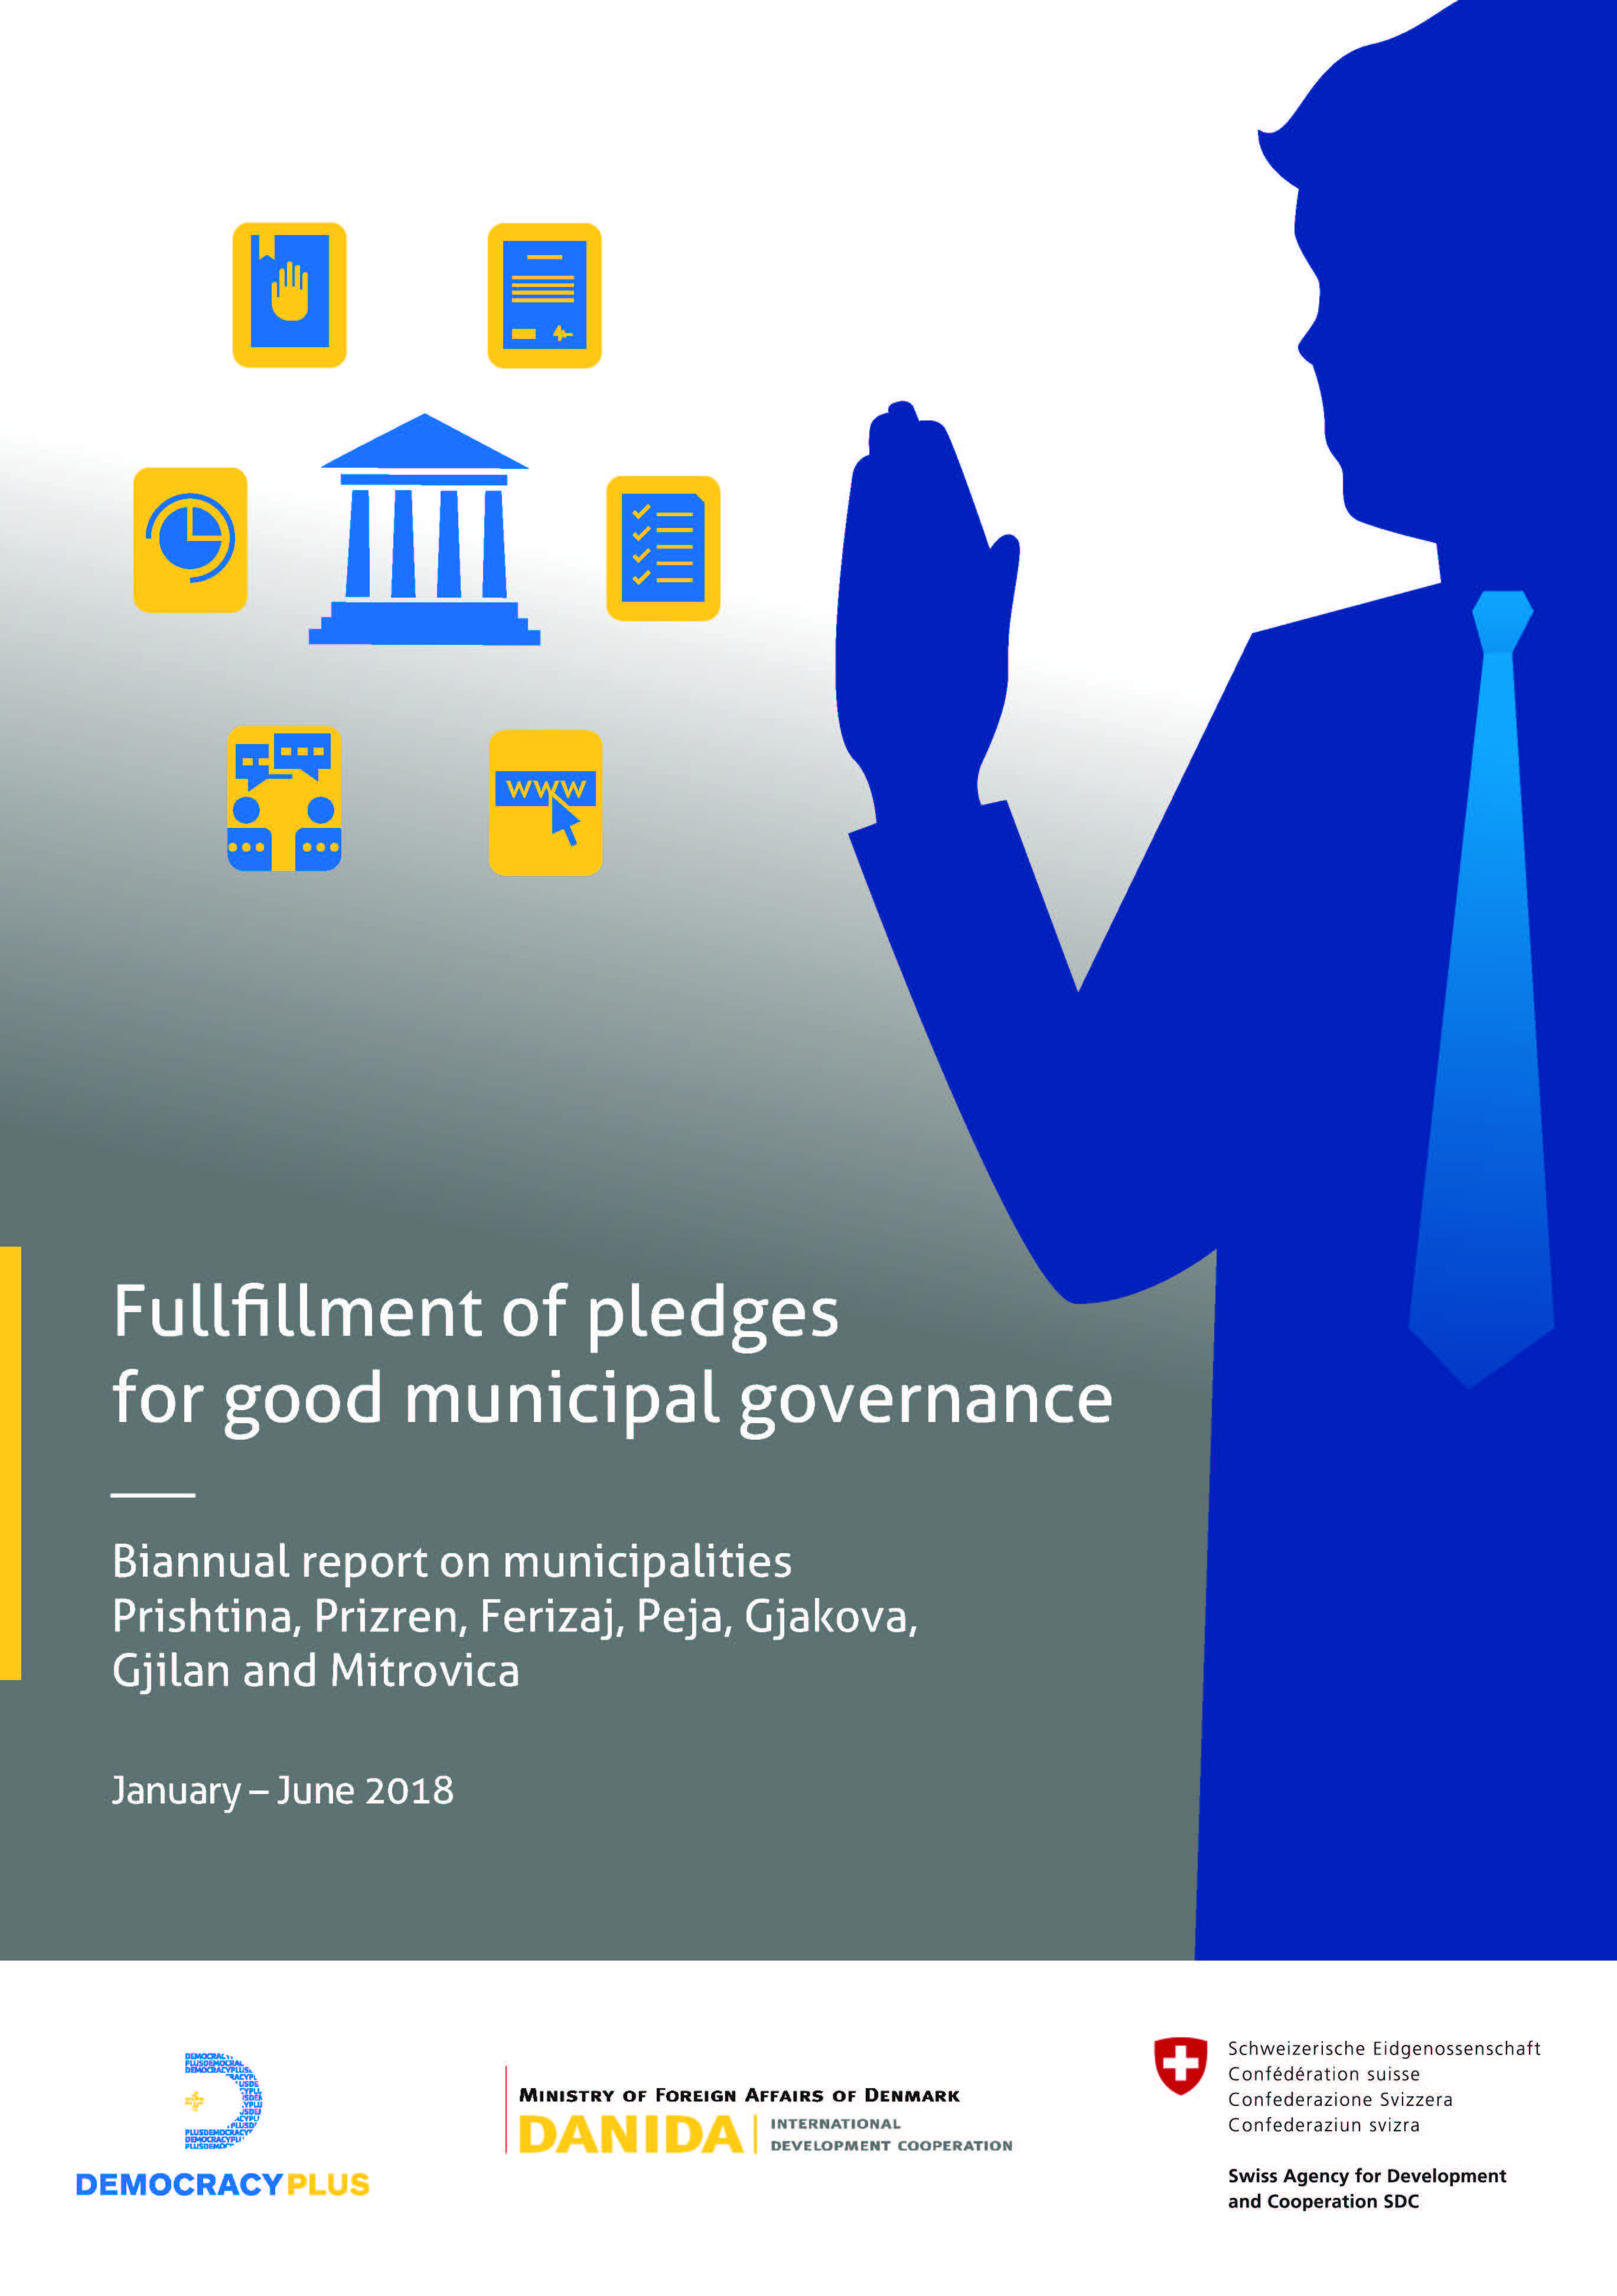 Fullfillment of pledges for good municipal governance